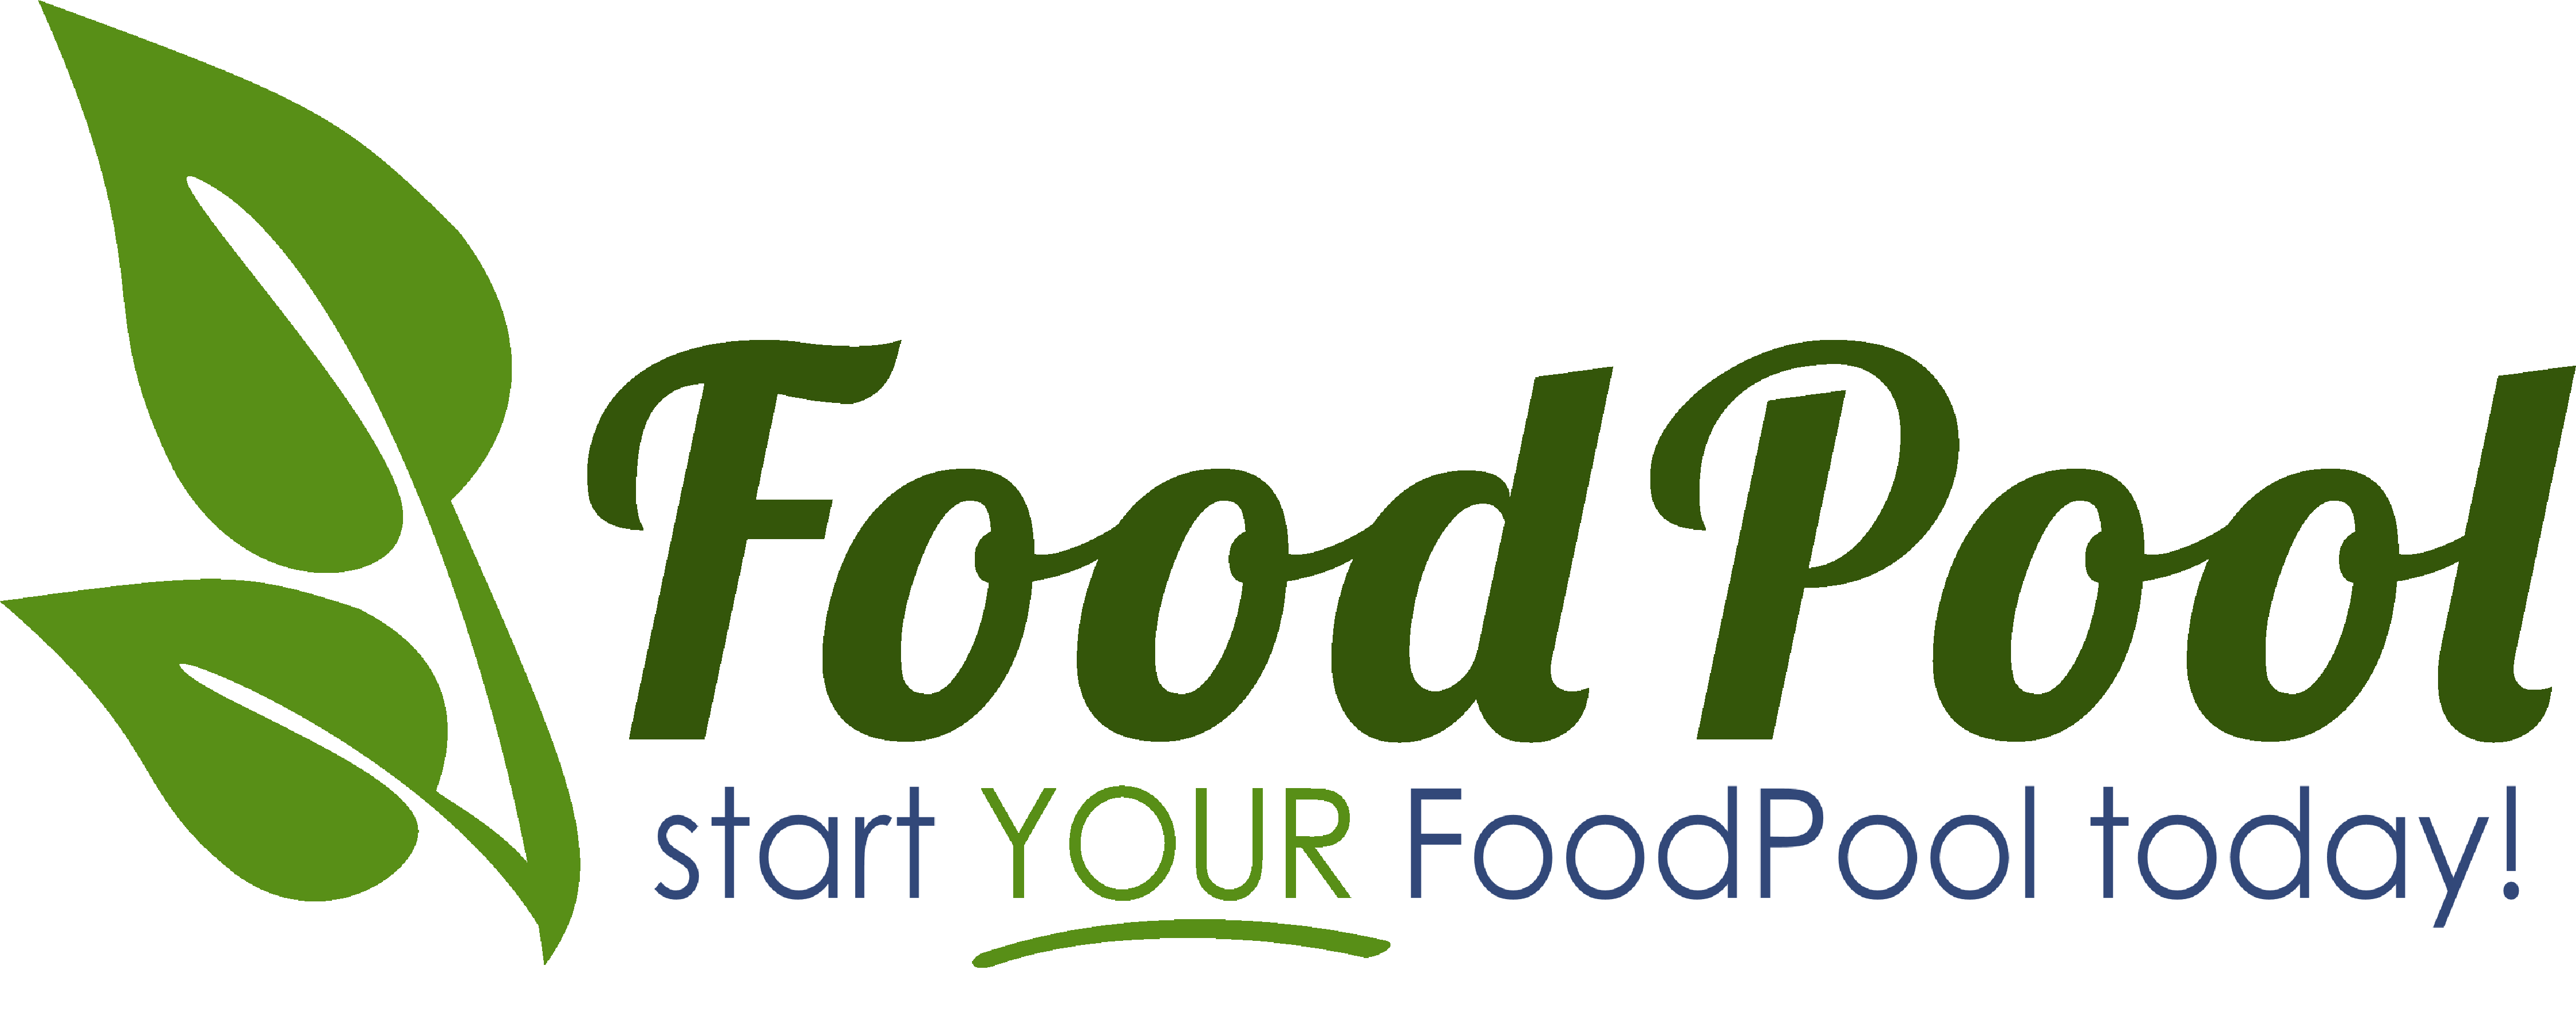 Start a FoodPool